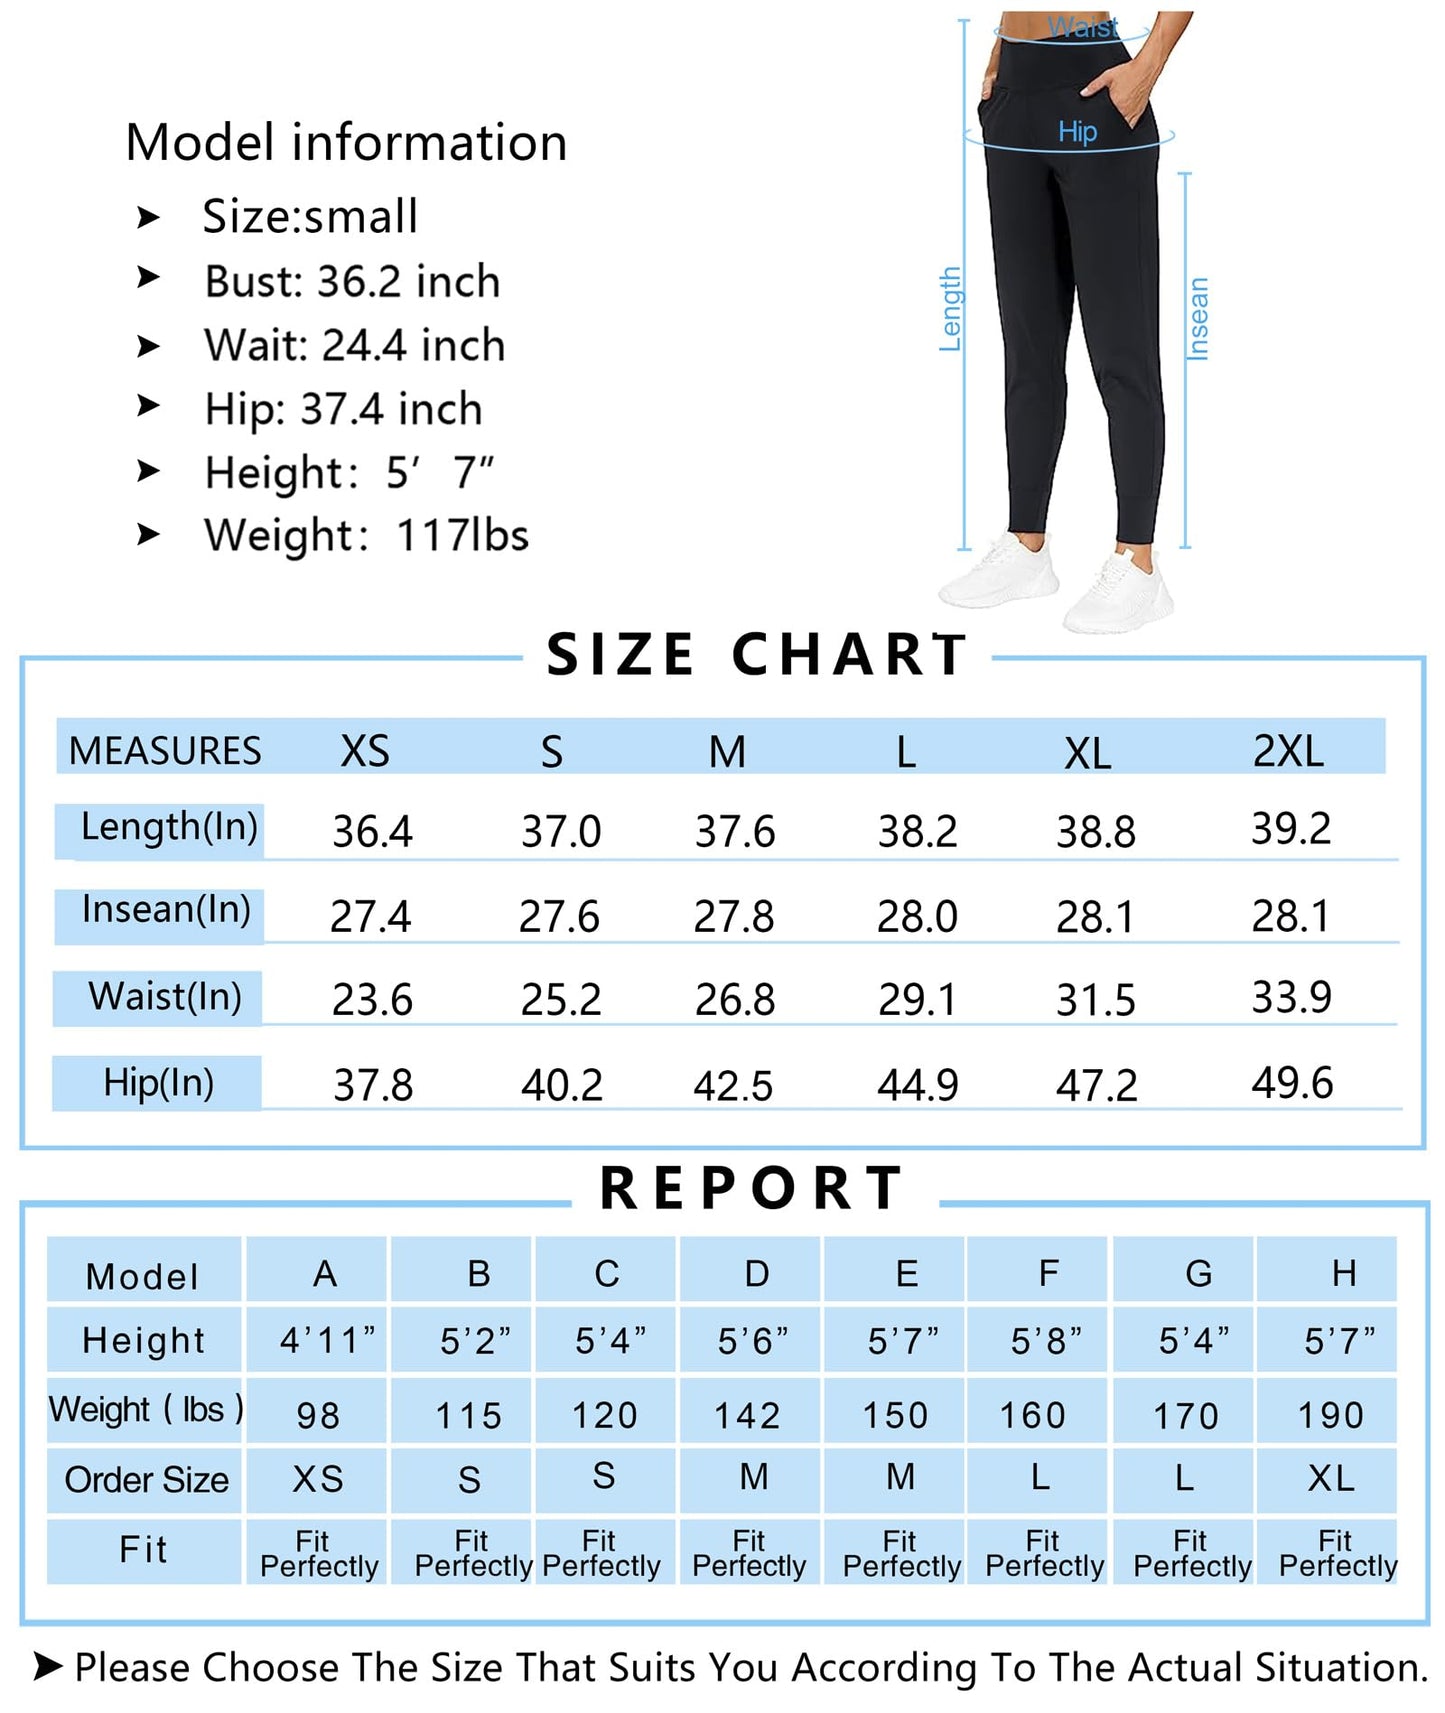 THE GYM PEOPLE Pantalones deportivos para mujer con bolsillos, leggings deportivos, pantalones cónicos para entrenamiento, yoga, correr, entrenamiento (mediano, negro)